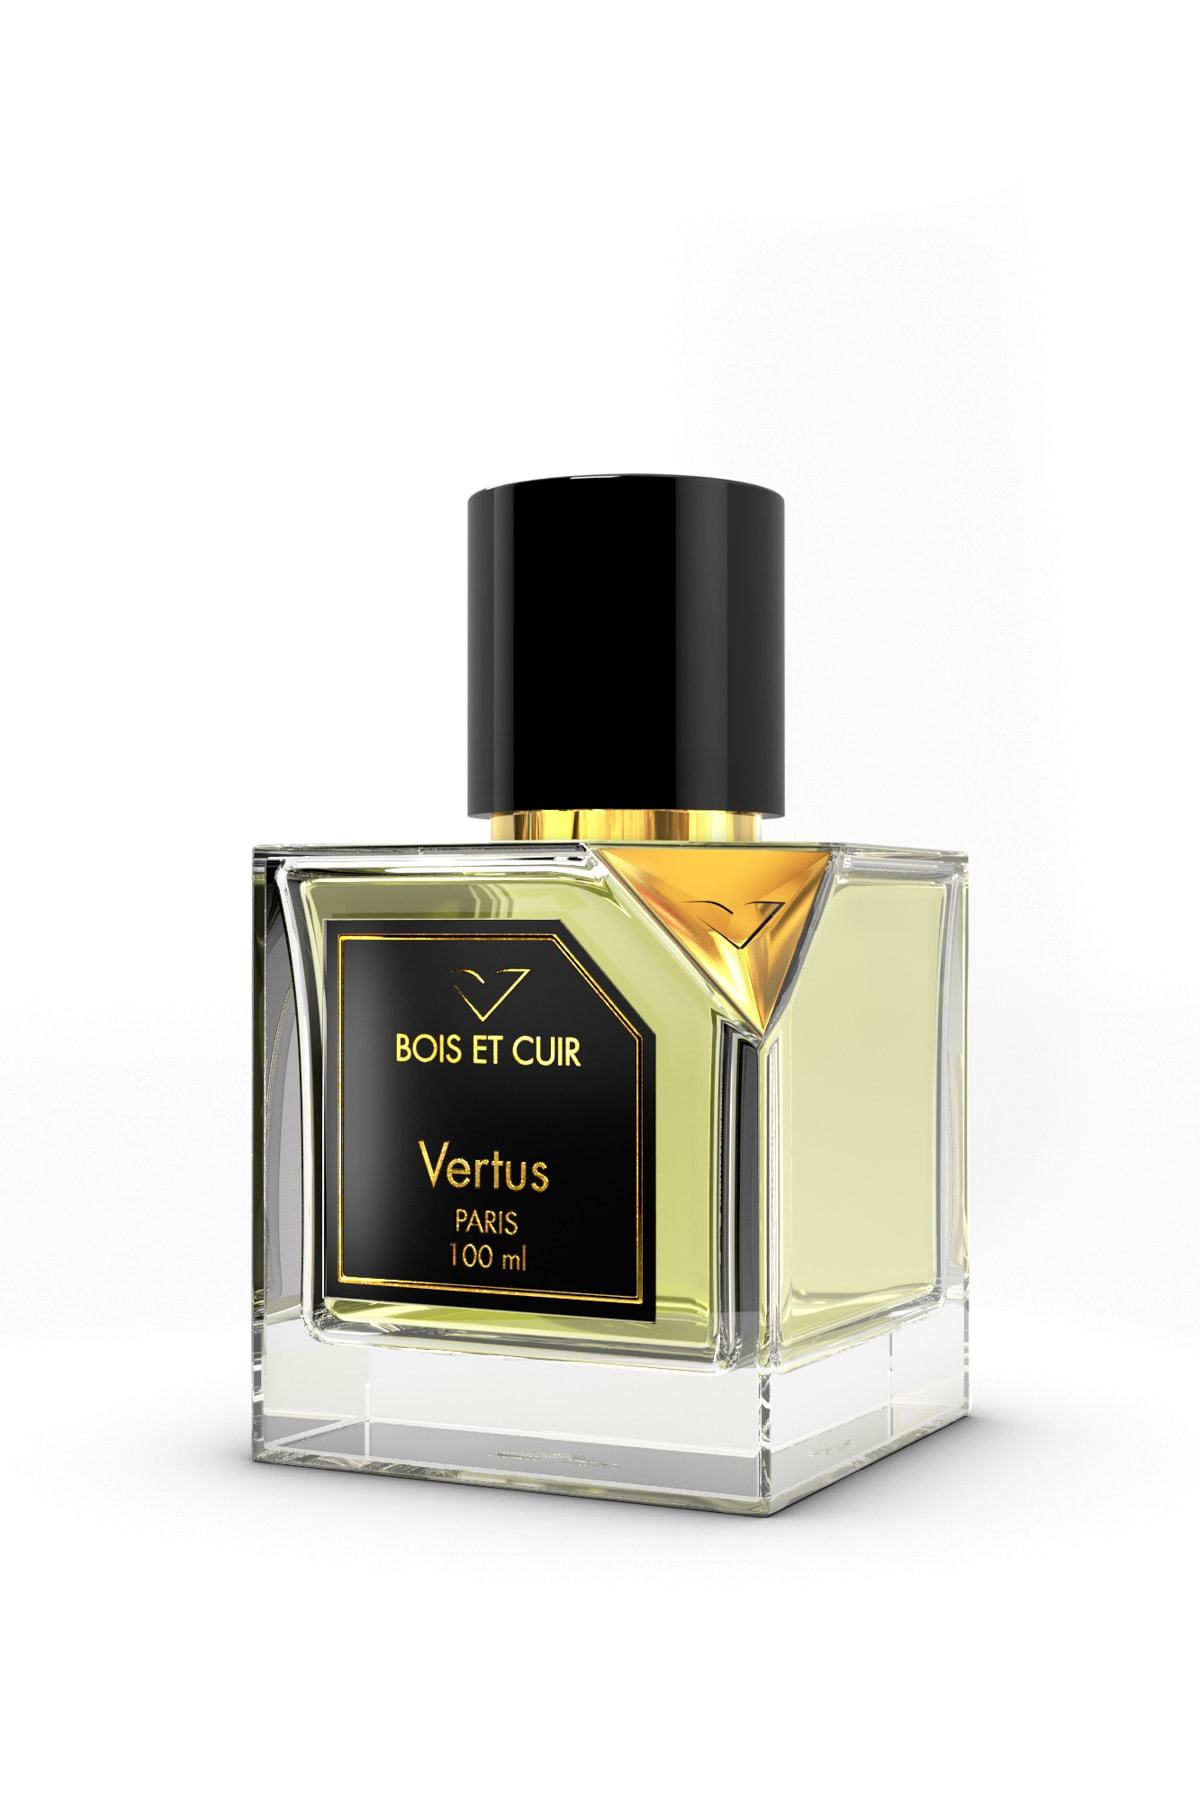 Vertus Bois Et Cuir by Vertus Unisex 3.4 oz Eau de Parfum Spray | FragranceBaba.com